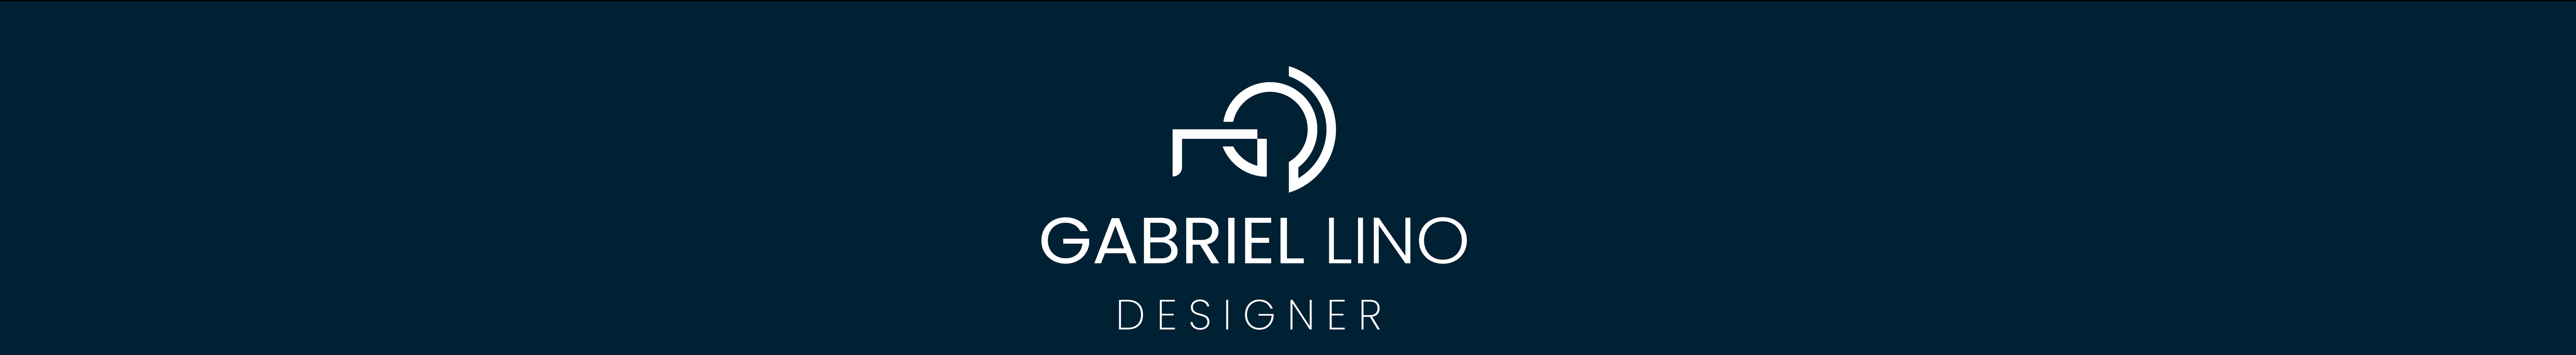 Gabriel Lino Dos Santos's profile banner